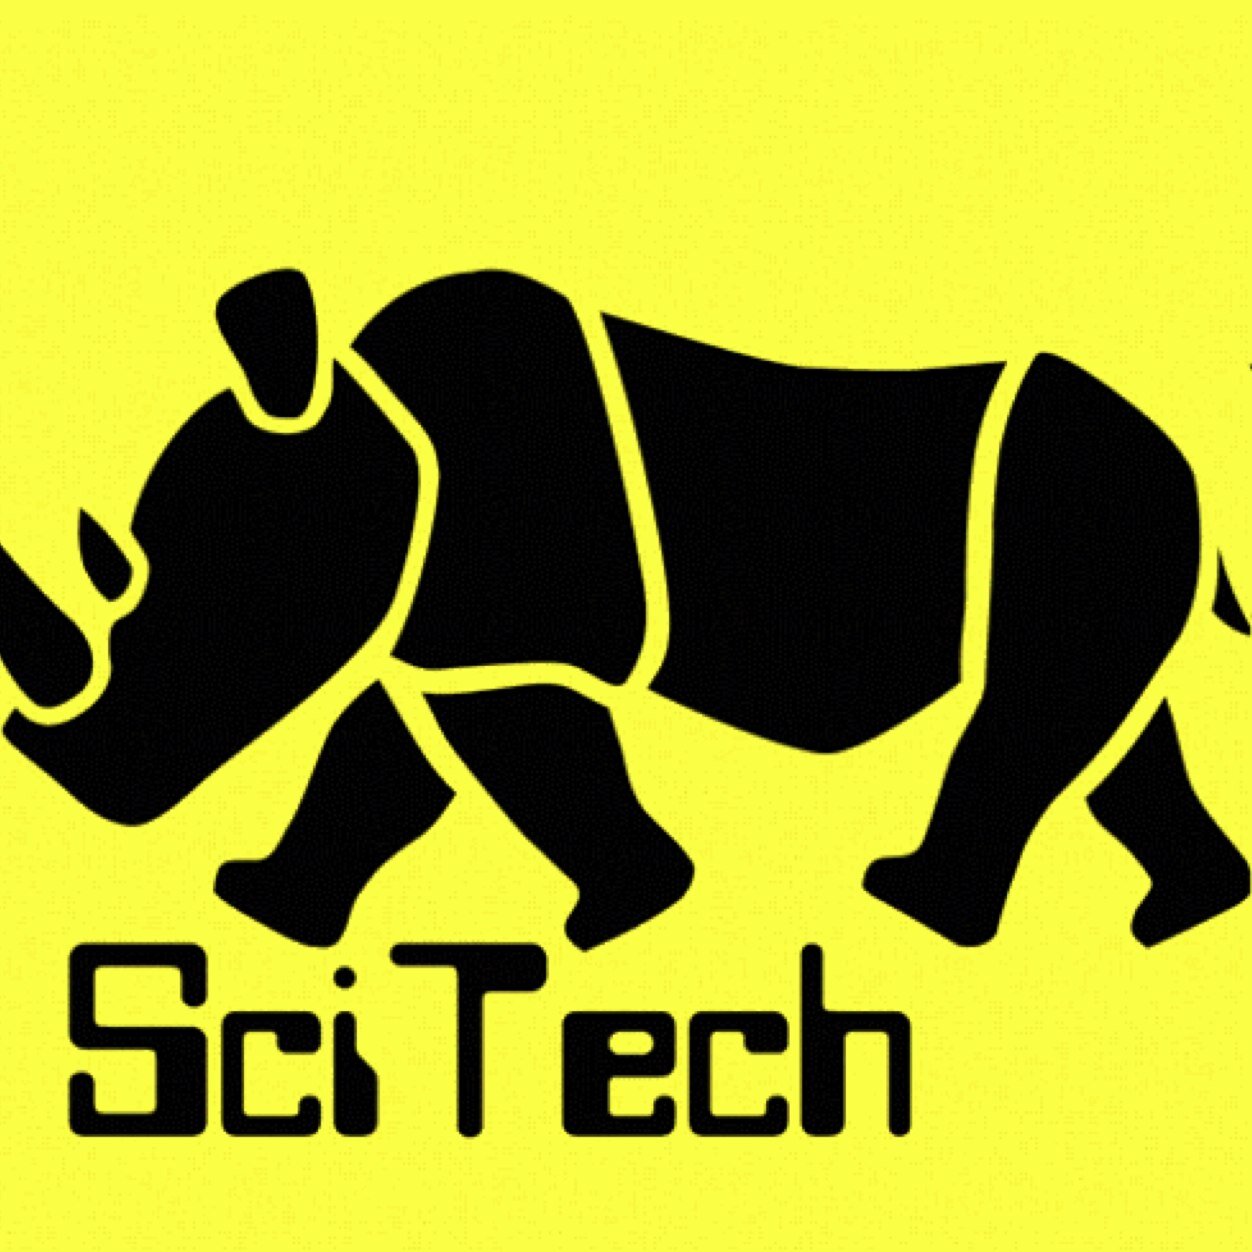 東工大ScienceTechno（通称サイテク）の公式アカウント。主に小学生を対象に、ショーや工作の科学教室を企画、運営する東工大の公認サークルです。何か知りたいことがあれば、リプライやDMなどでお気軽にお問い合わせください。
サイテクの新歓公式アカウントはこちら→@scitech_shinkan